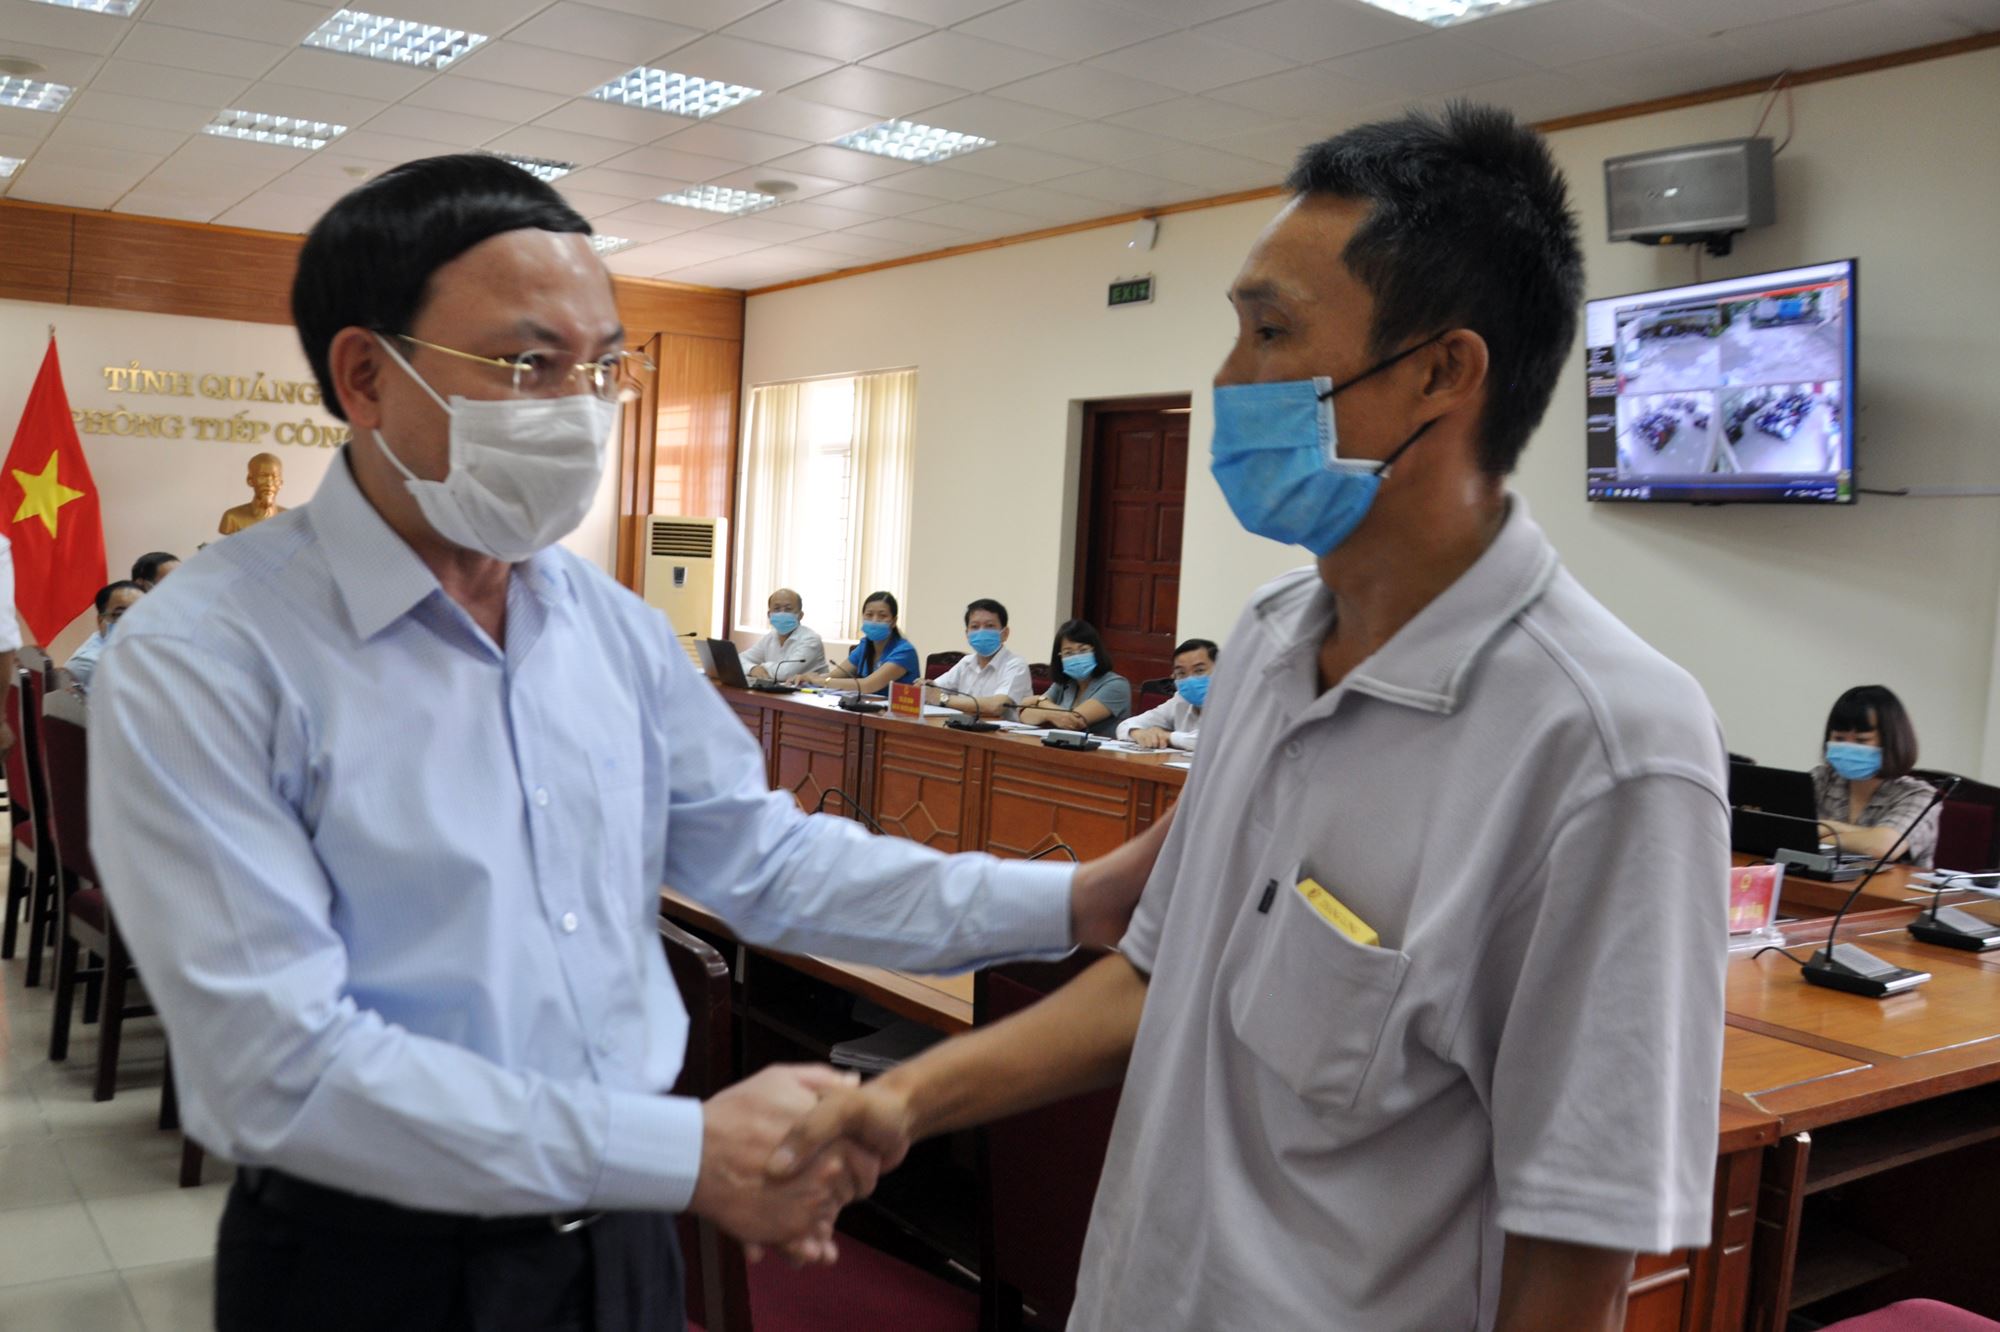 Đồng chí Bí thư Tỉnh ủy trao đổi, chia sẻ với gia đình Nguyễn Văn Tuấn, thường trú tại tổ 23, khu 3, phường Cao Thắng, TP Hạ Long 